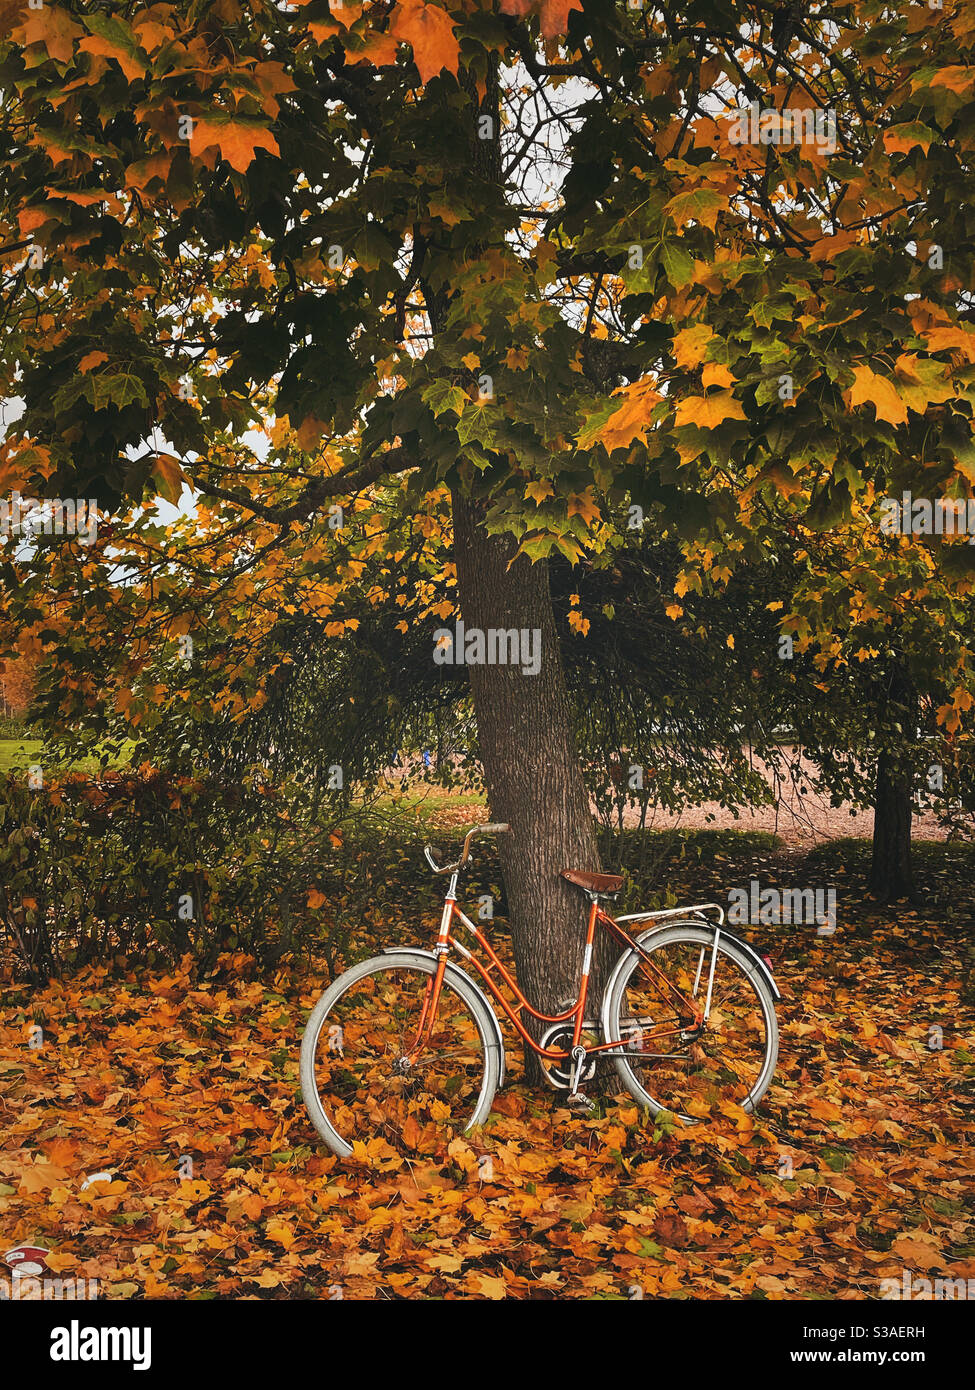 Vélo orange et arbre avec feuilles jaunes, nature avec couleurs d'automne Banque D'Images